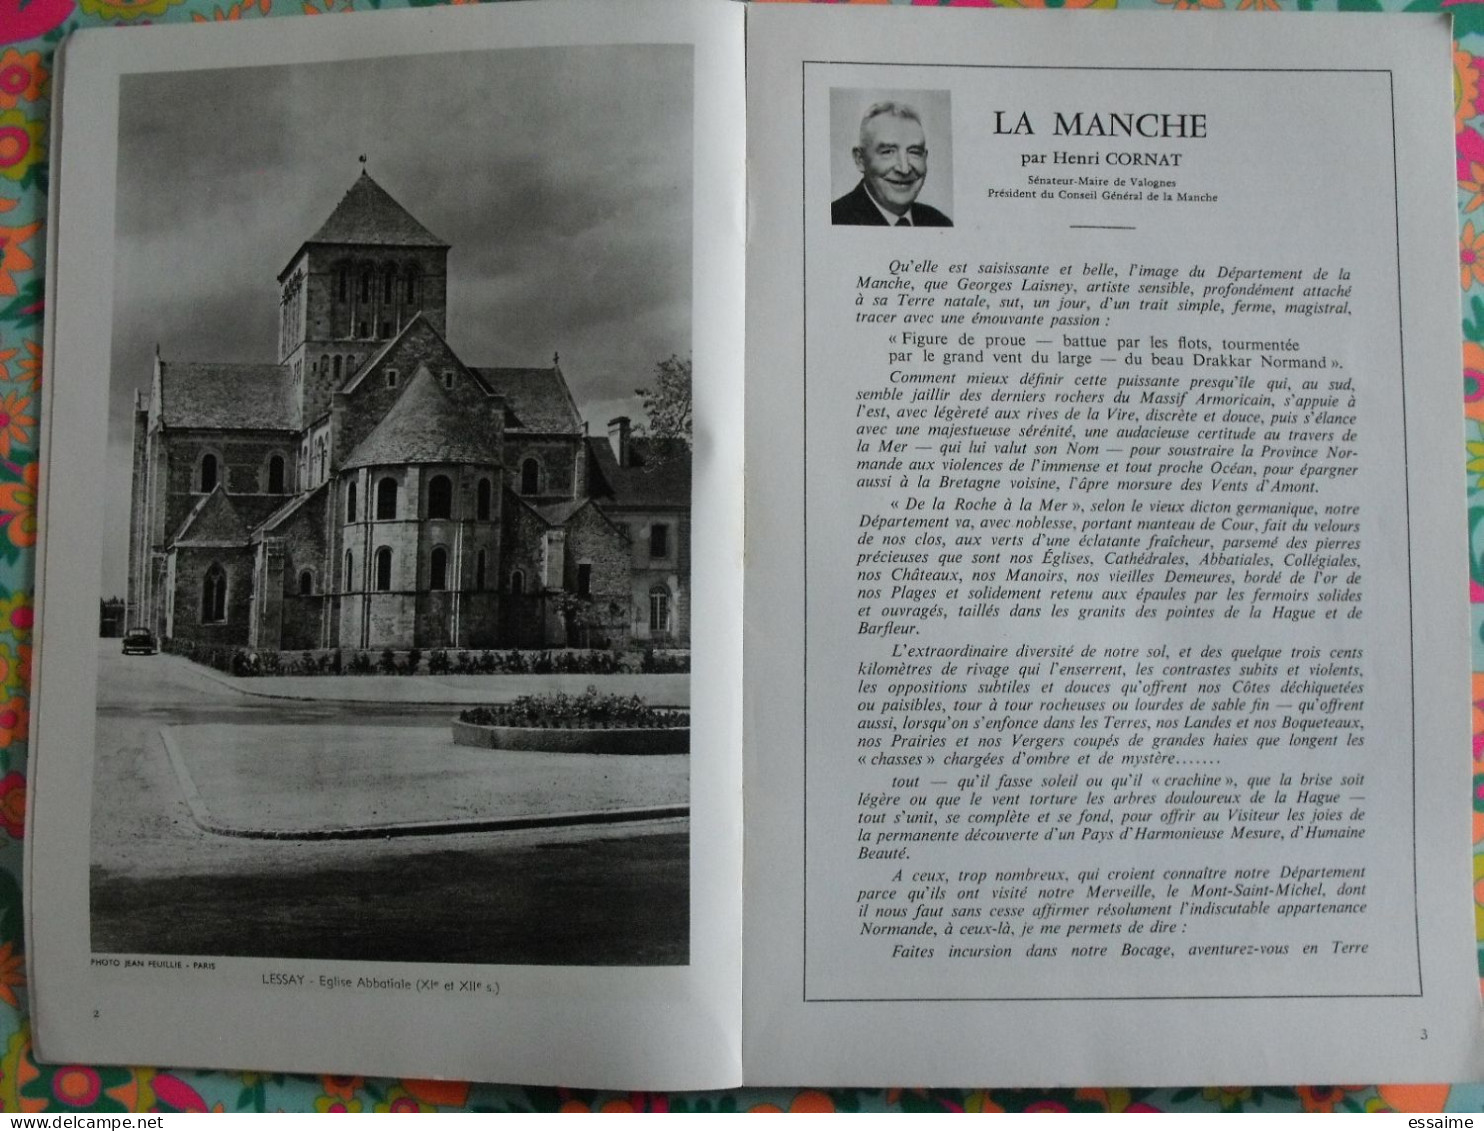 La France à Table N° 105. 1963. Manche. Saint-lo Cérisy Carentan Cherbourg Flamanville Urville. Gastronomie - Tourisme & Régions